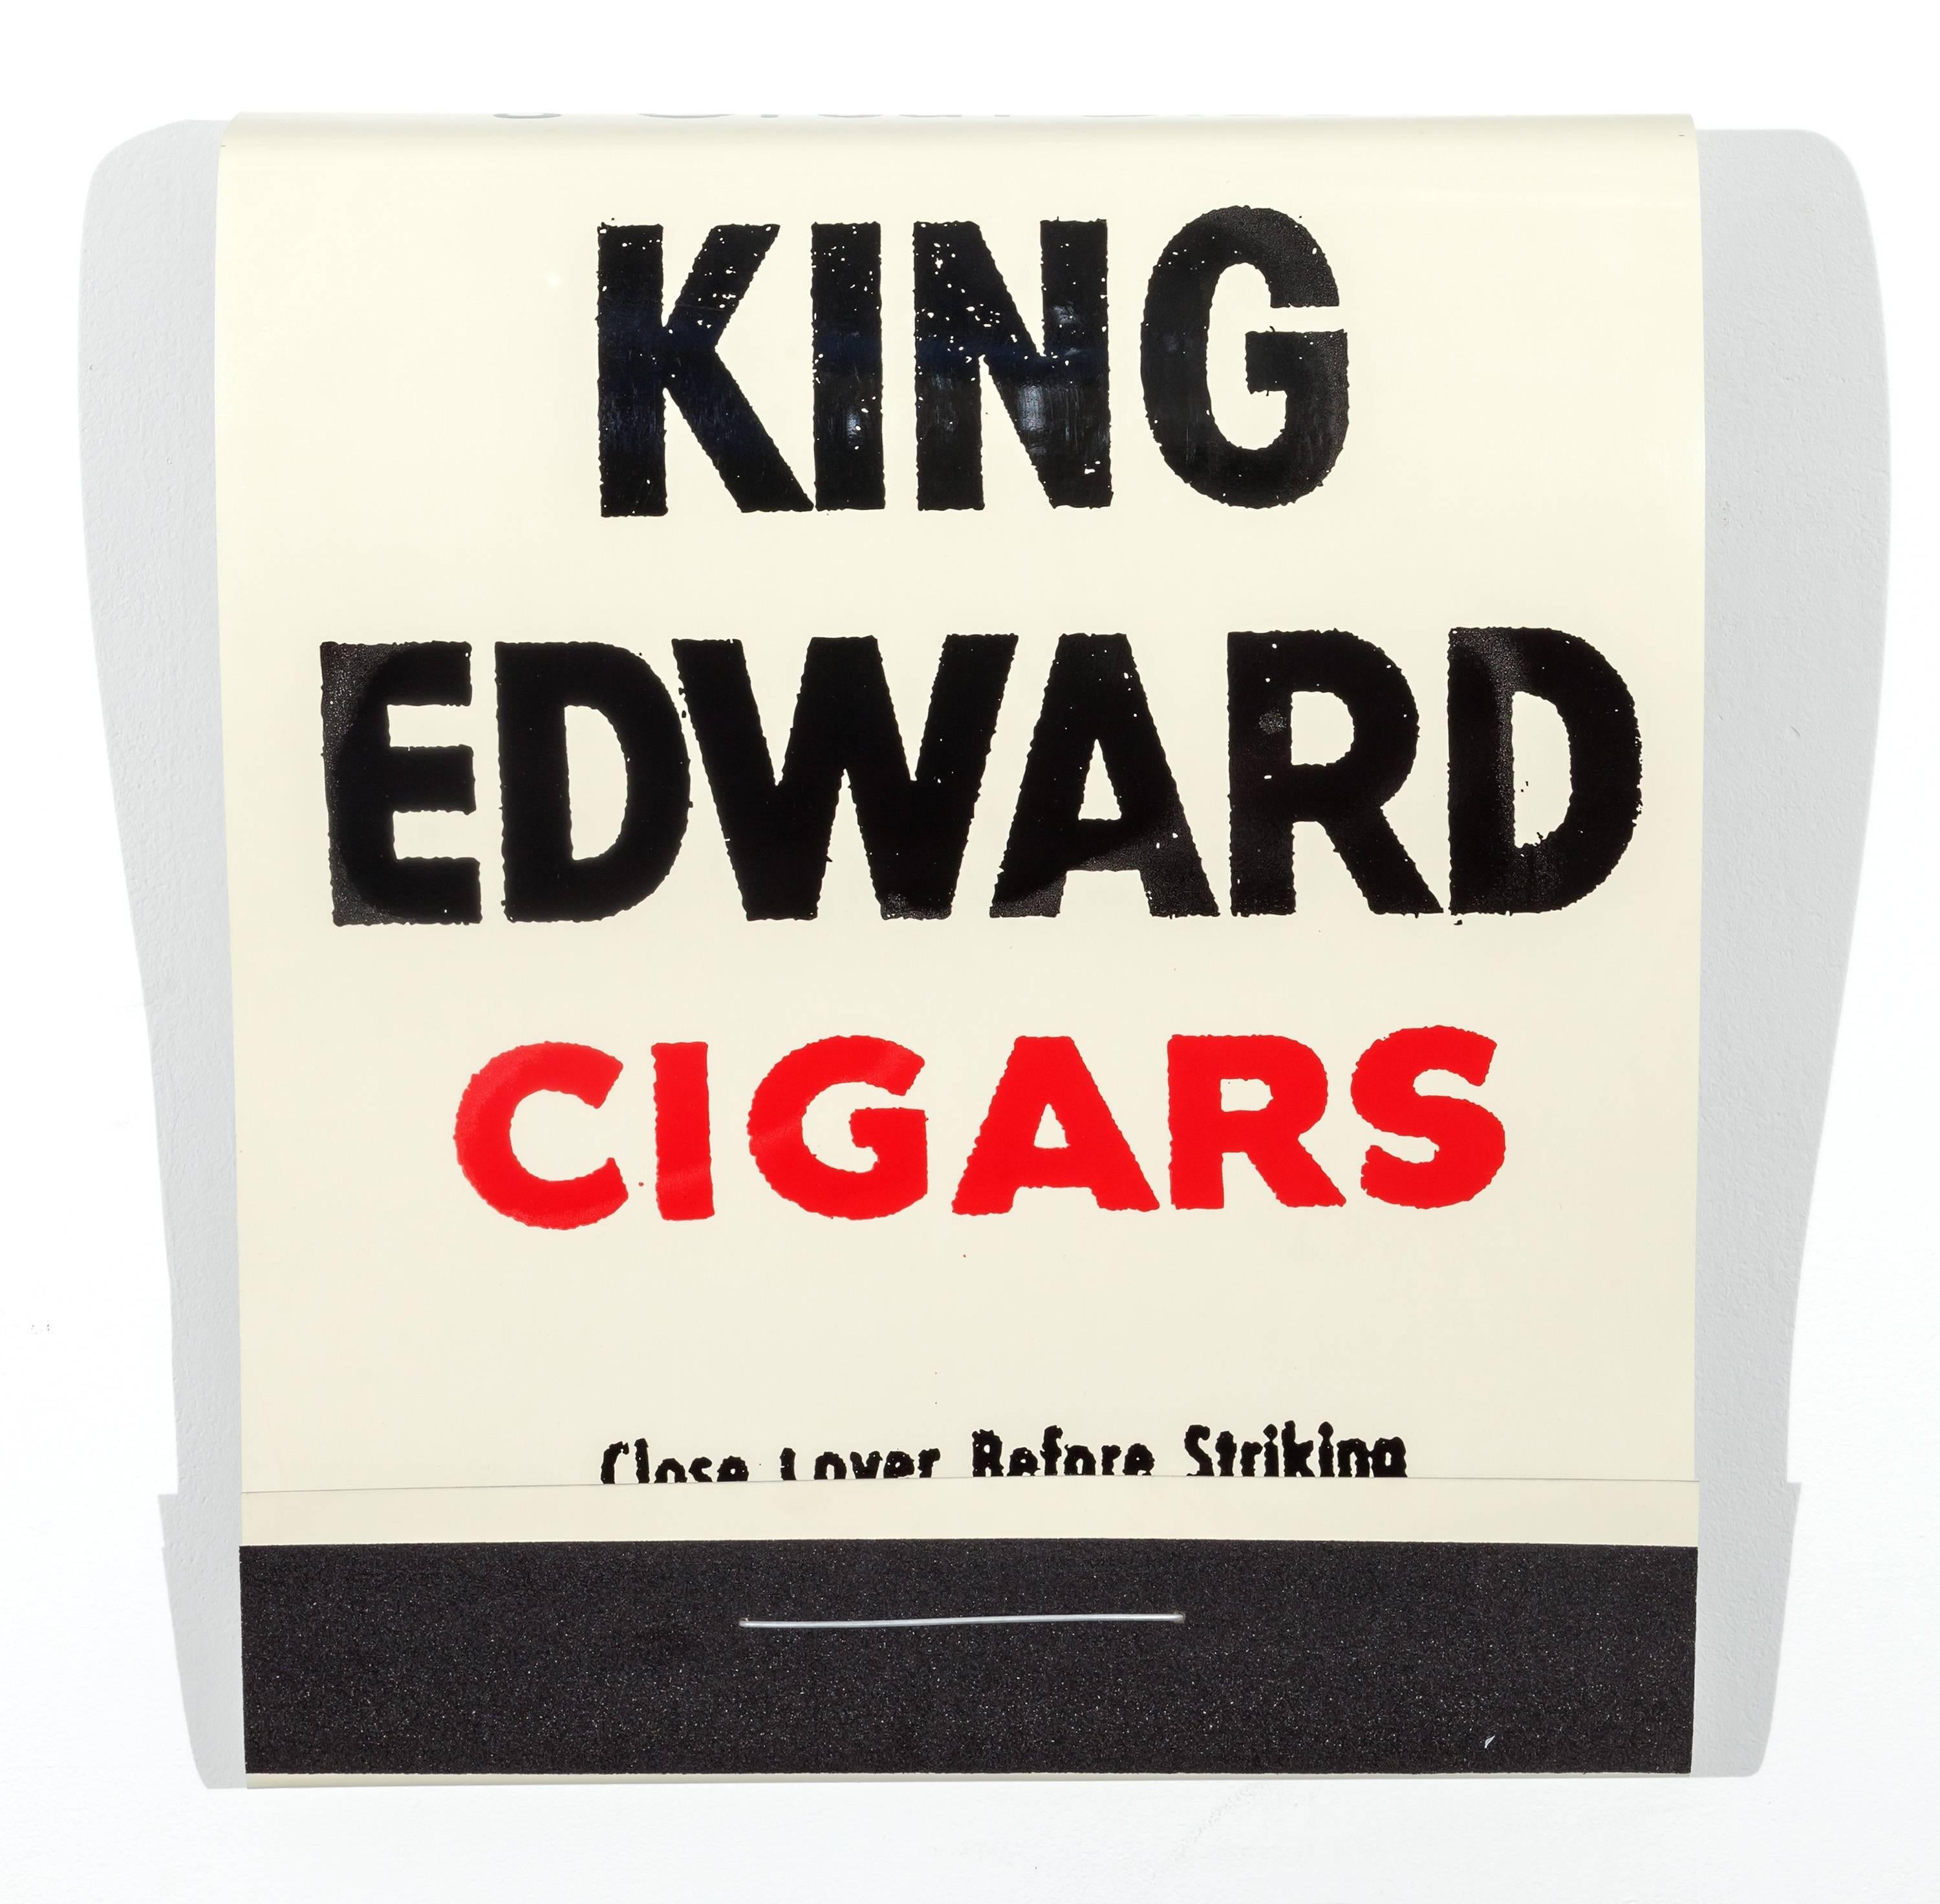 King Edward Cigars - Mixed Media Art by Skylar Fein